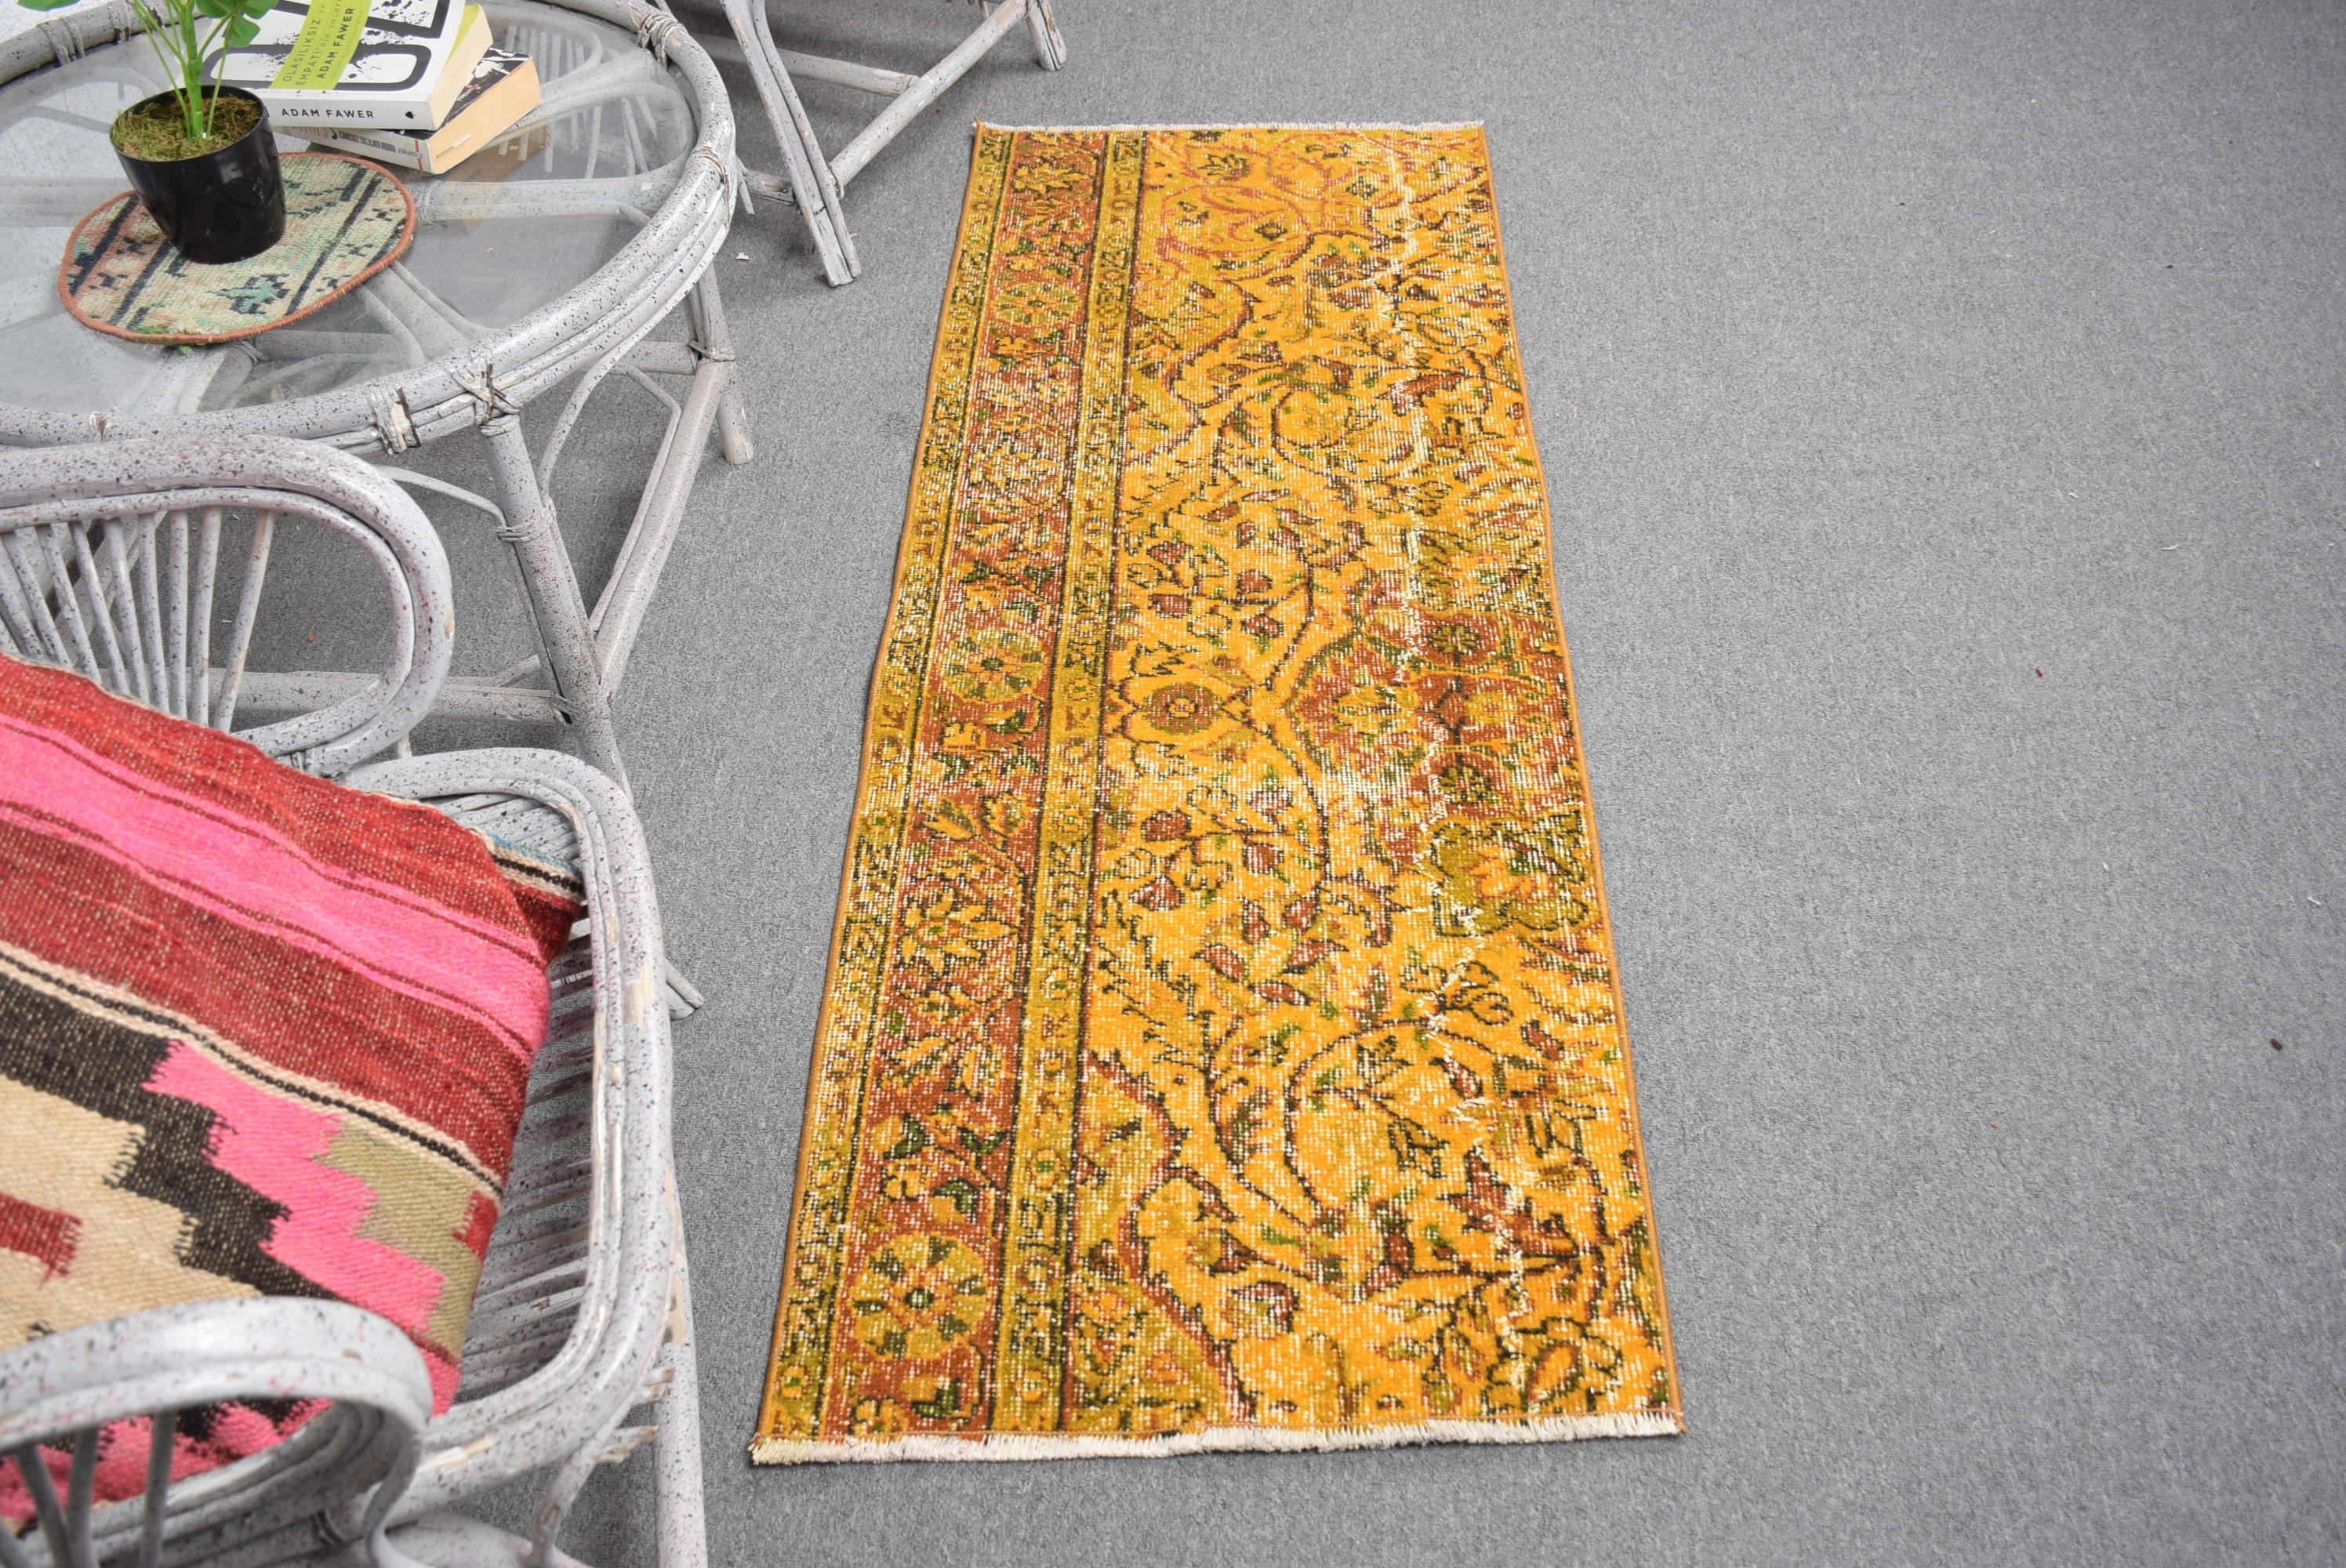 Vintage Rug, Flatweave Rug, Orange Floor Rug, Turkish Rugs, Kitchen Rug, Rugs for Stair, 2x5.4 ft Runner Rug, Antique Rug, Bedroom Rugs